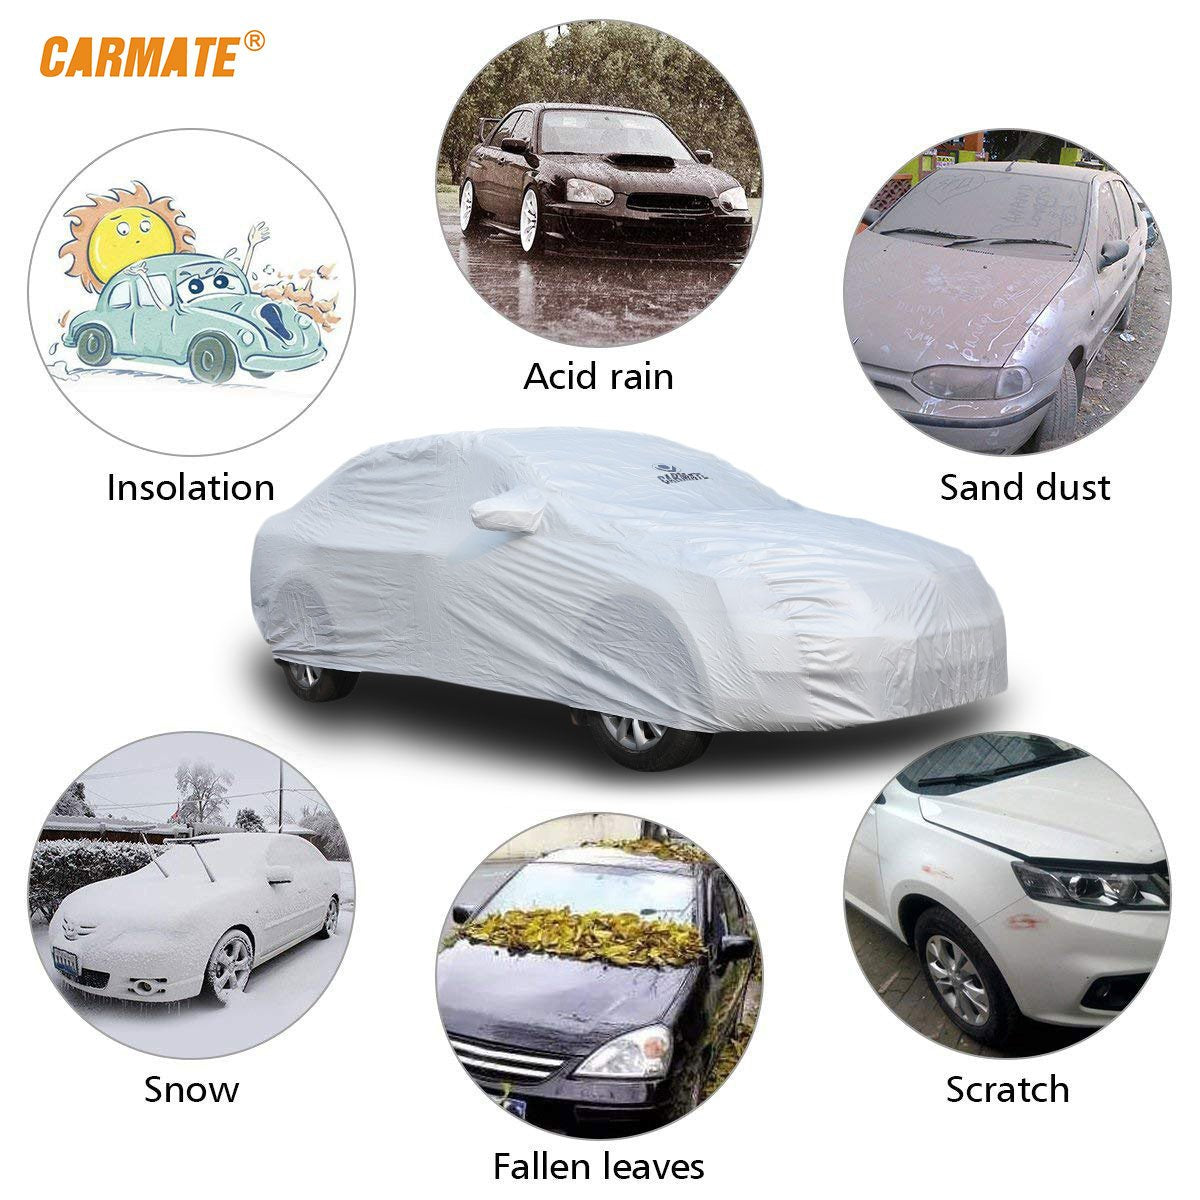 Carmate Premium Car Body Cover Silver Matty (Silver) for  Maruti - K10 - CARMATE®